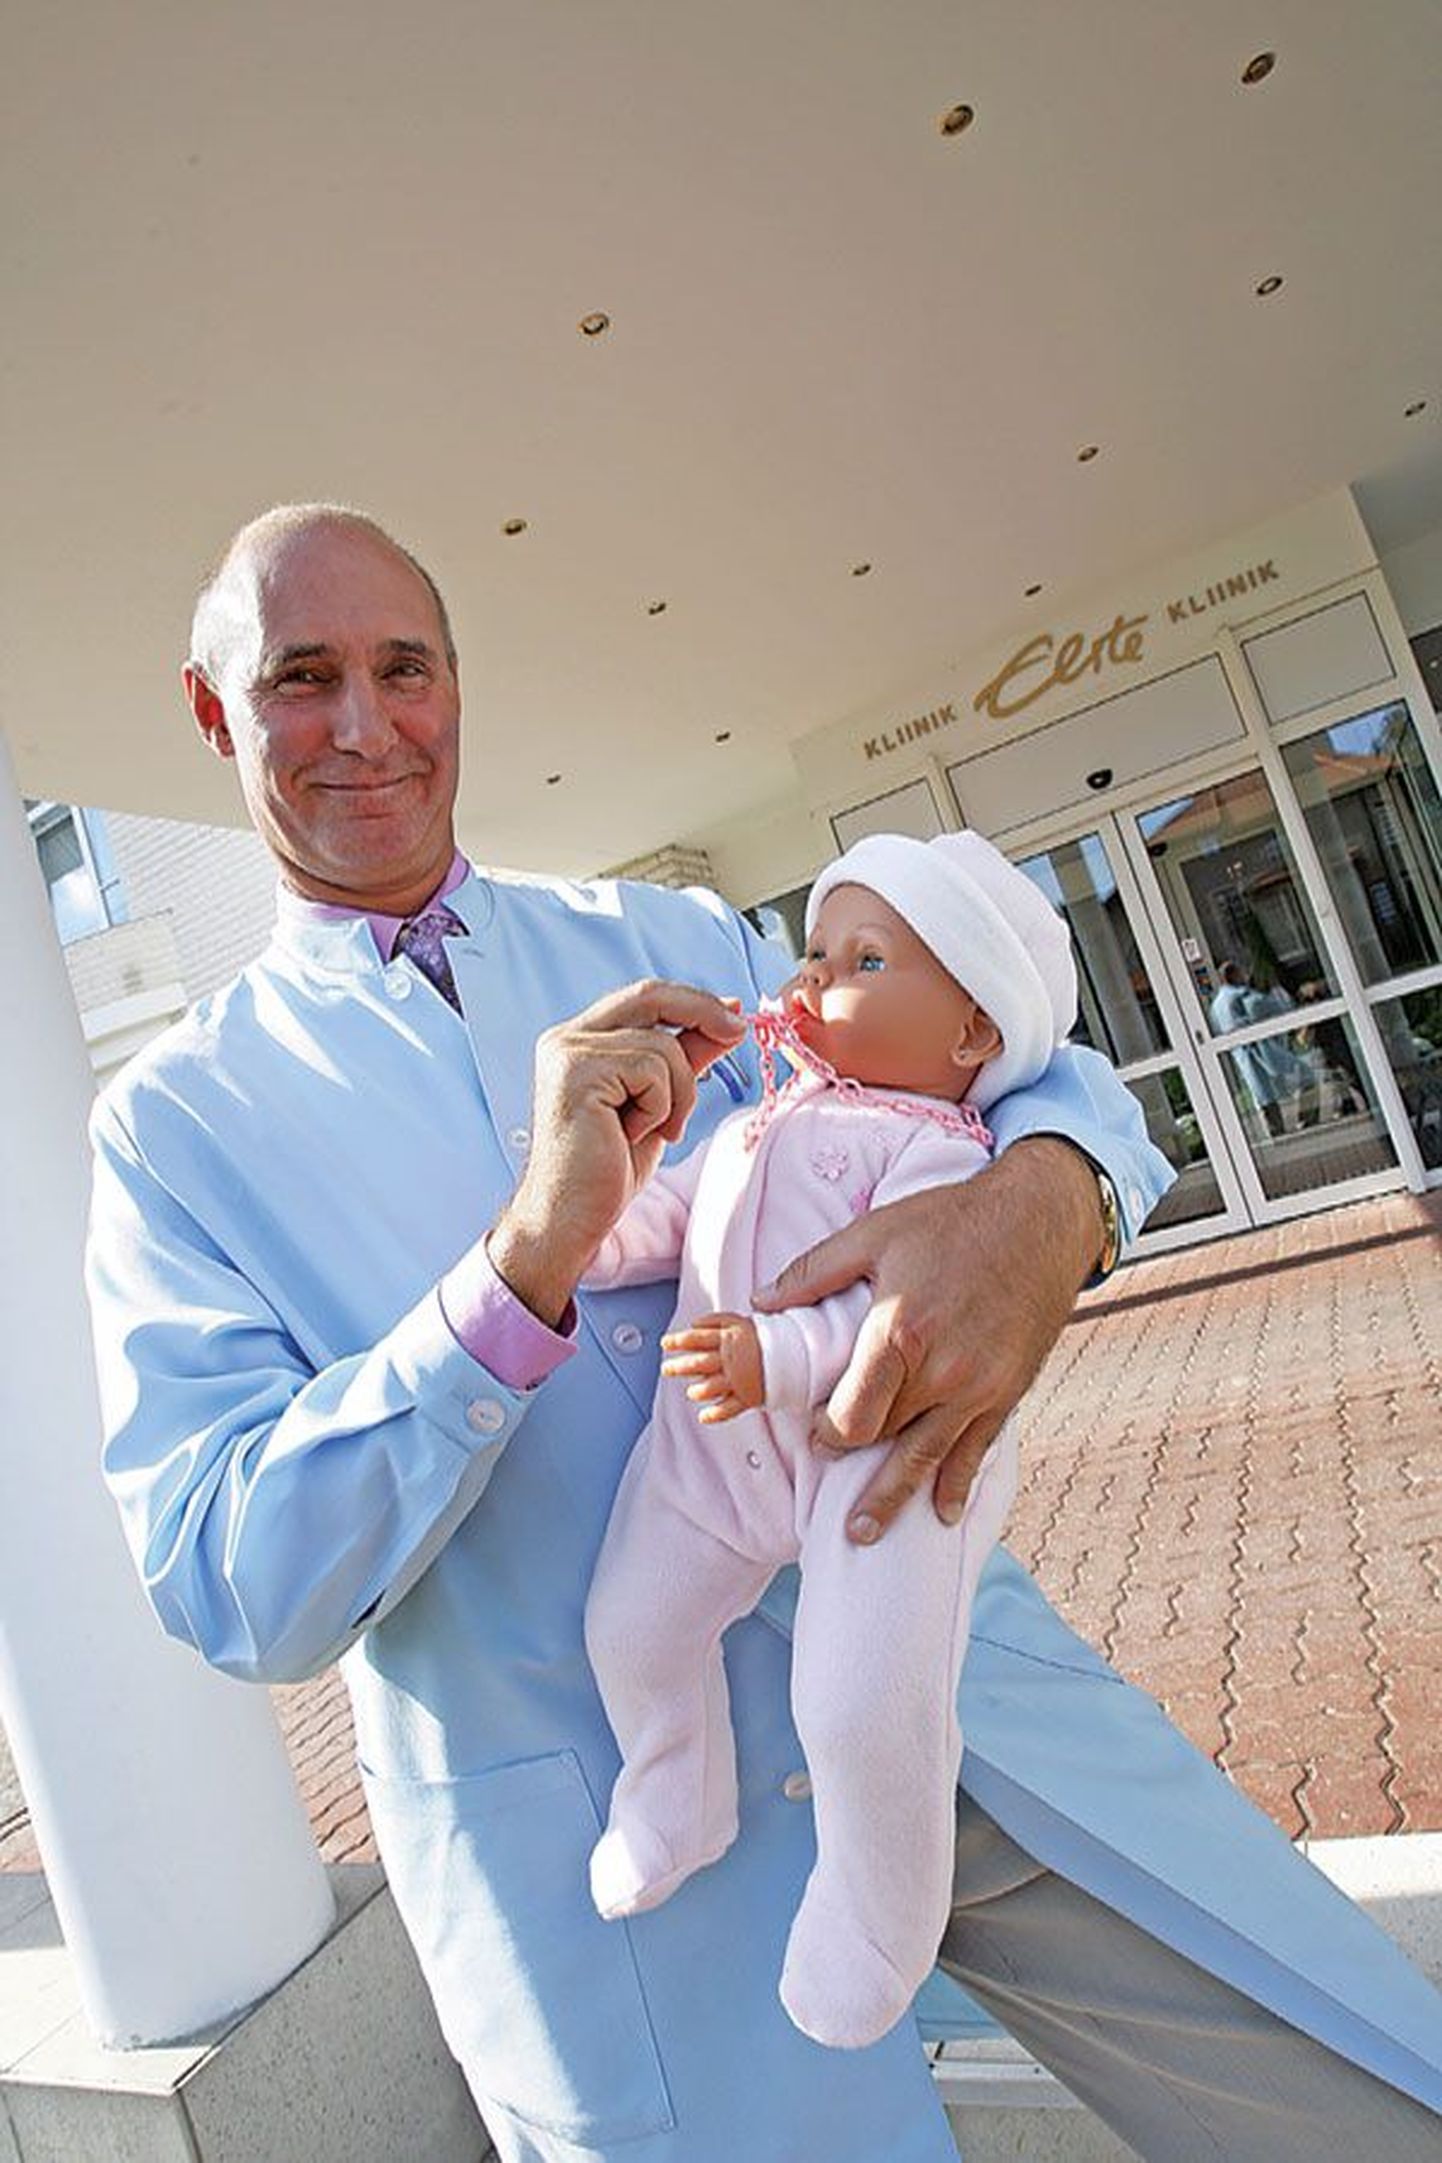 Врач-гинеколог, специалист по искусственному оплодотворению Андрей Сырица. В его клинике Elite в Тарту в сентябре отметили рождение тысячного младенца.